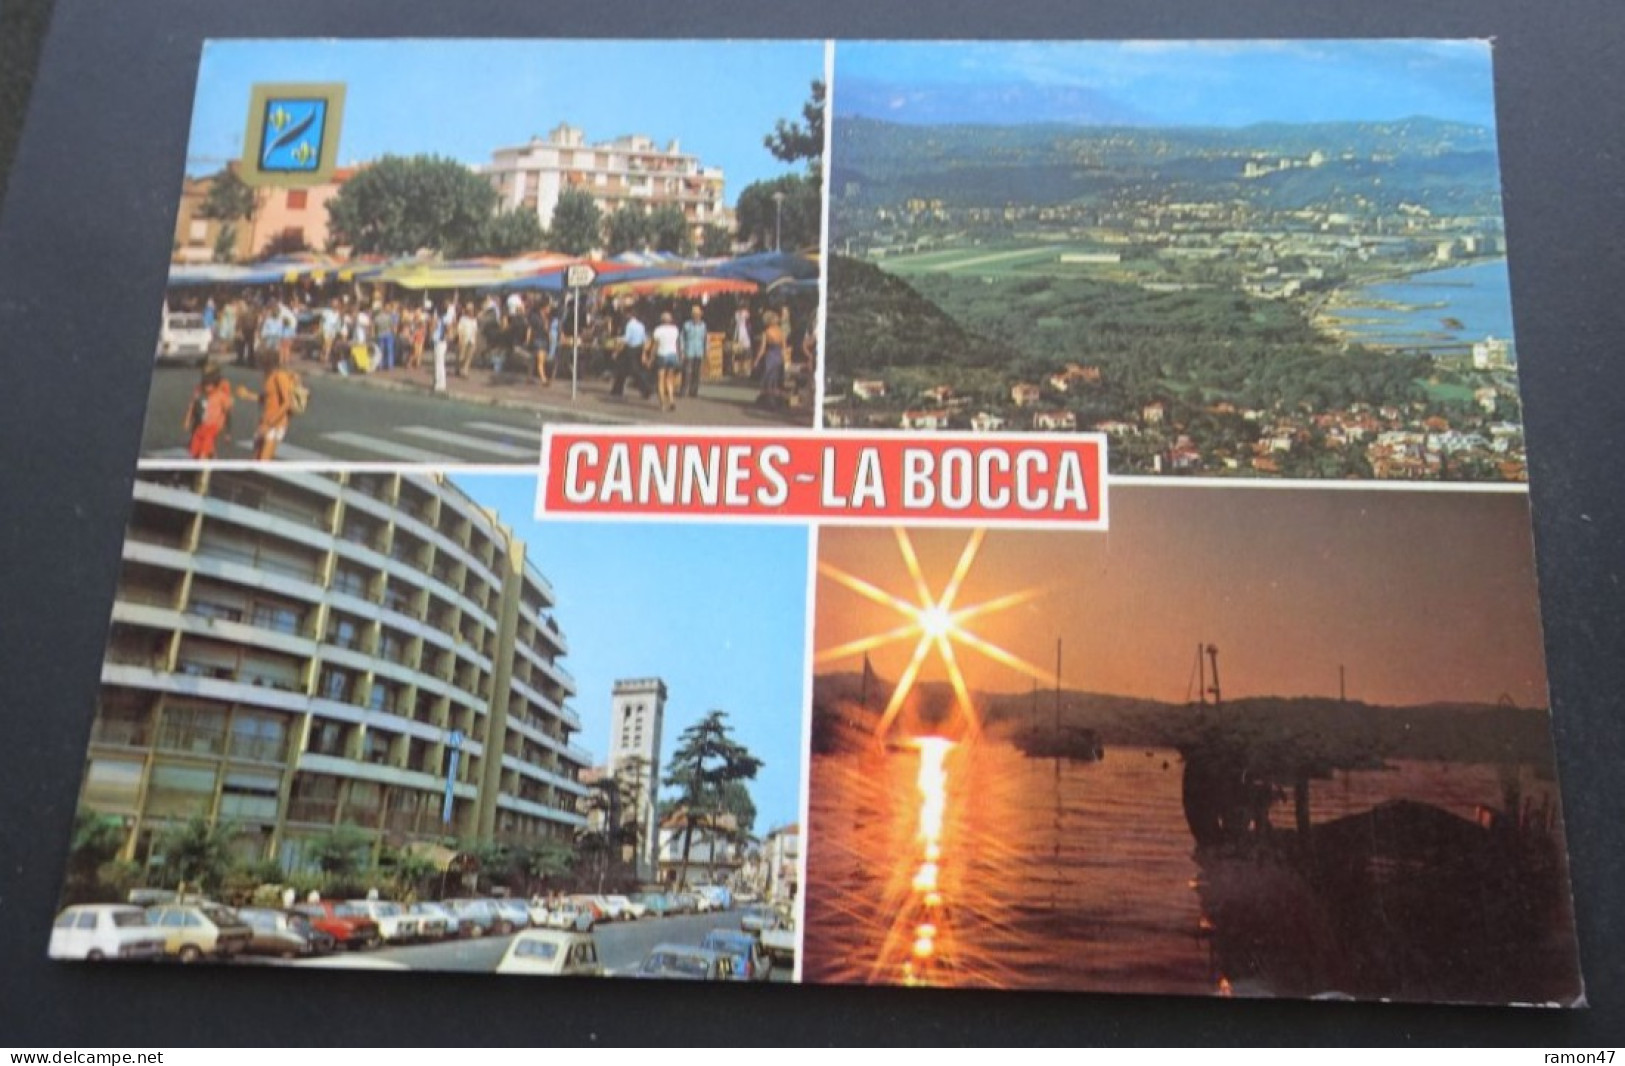 Cannes-La Bocca - Souvenir - Sté Altari, Nice - Cannes